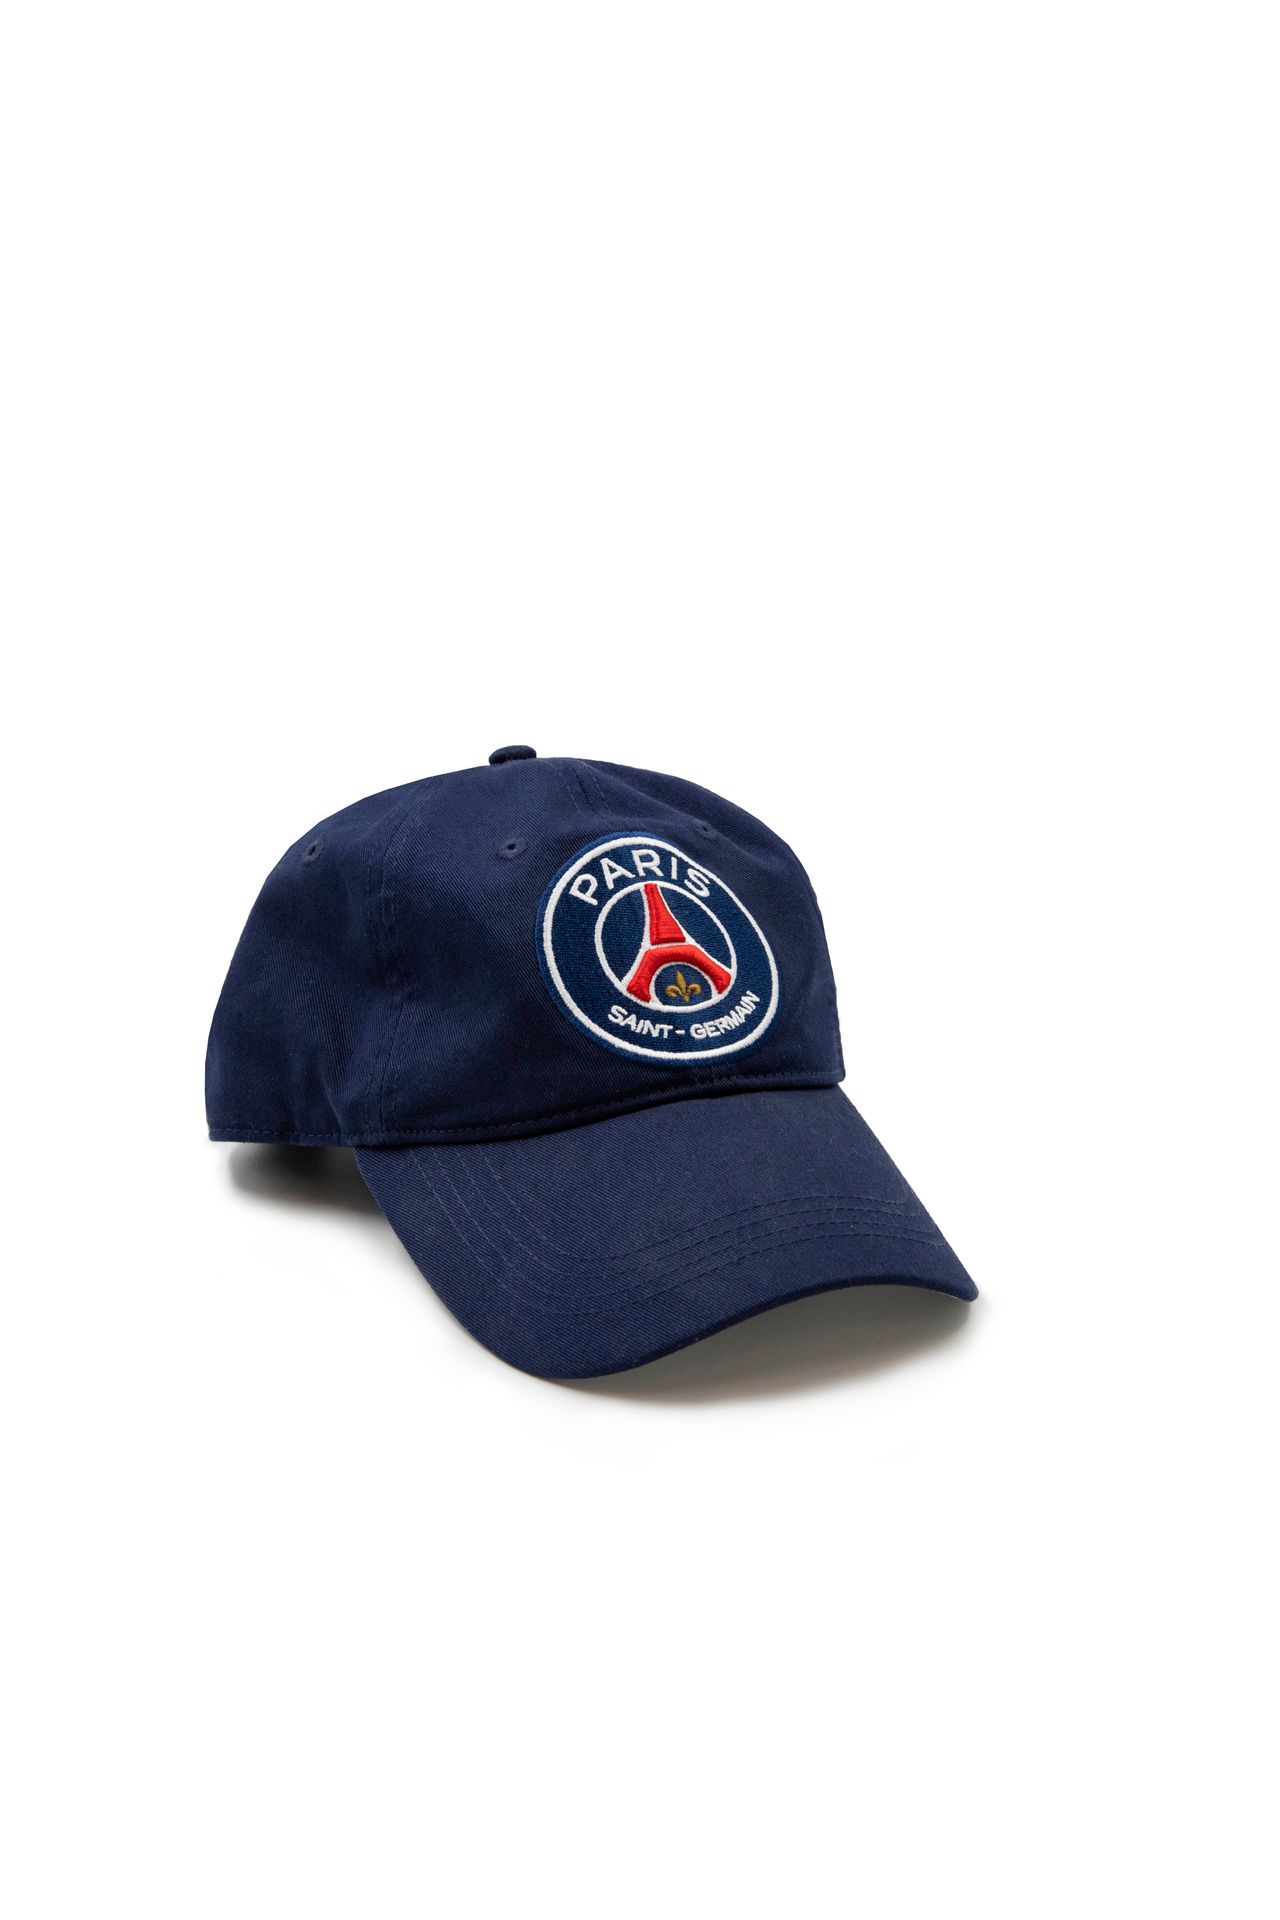 Teddy RINER Mütze von Paris Saint-Germain*, getragen von Teddy Riner im Jahr 201&hellip;